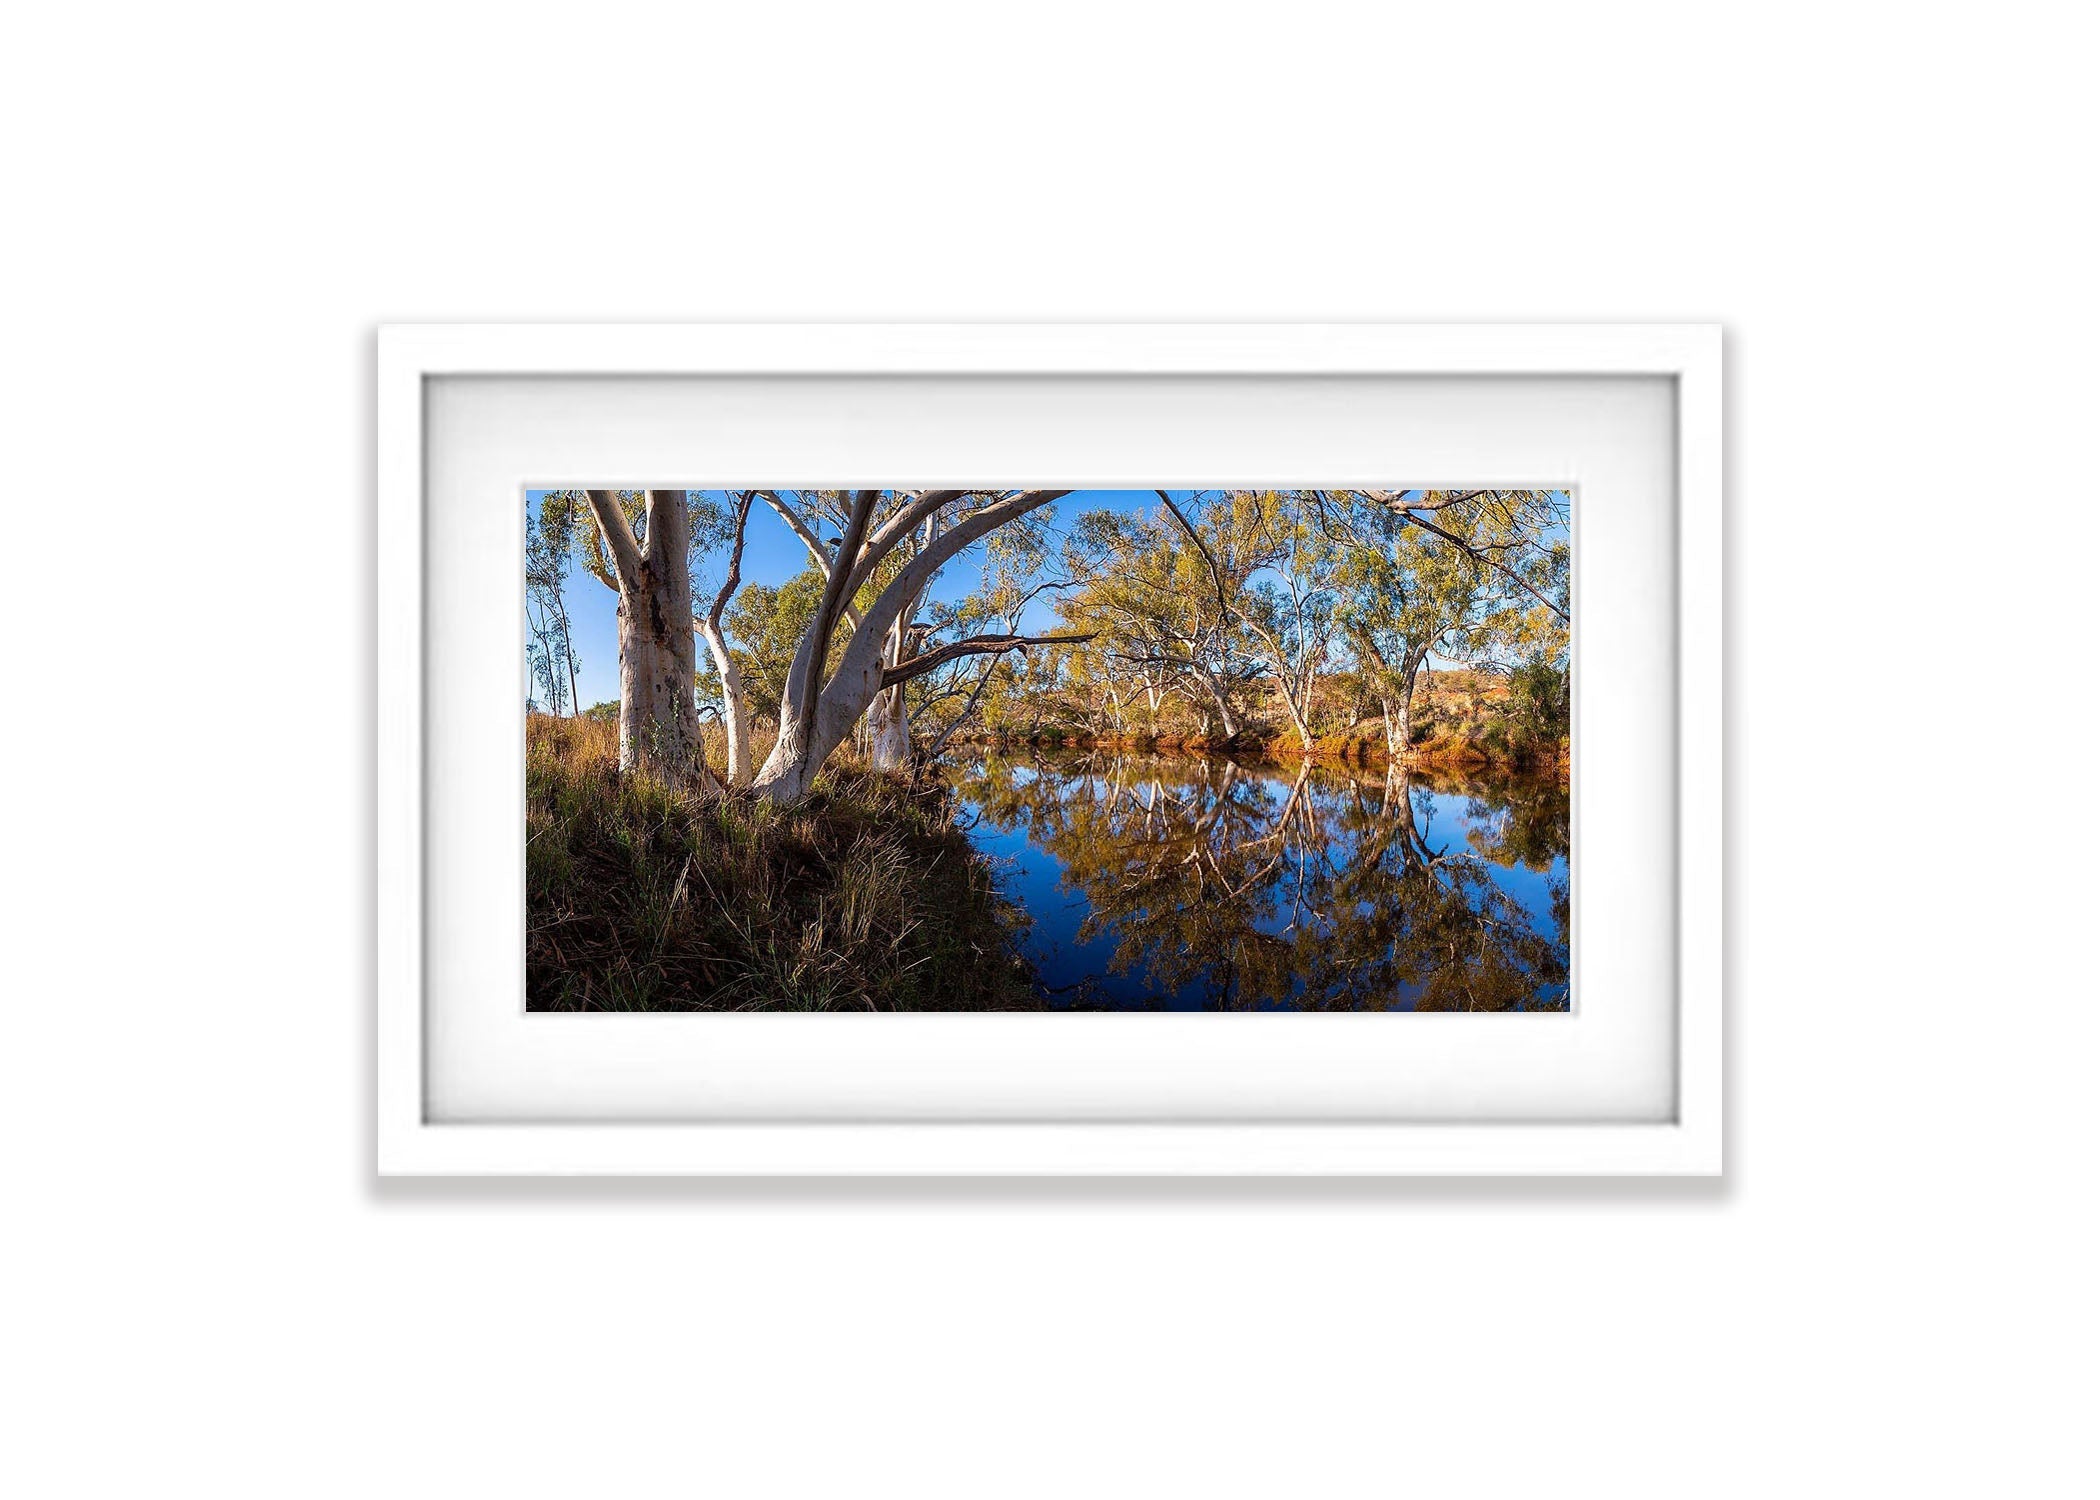 Bellary Creek - The Pilbara